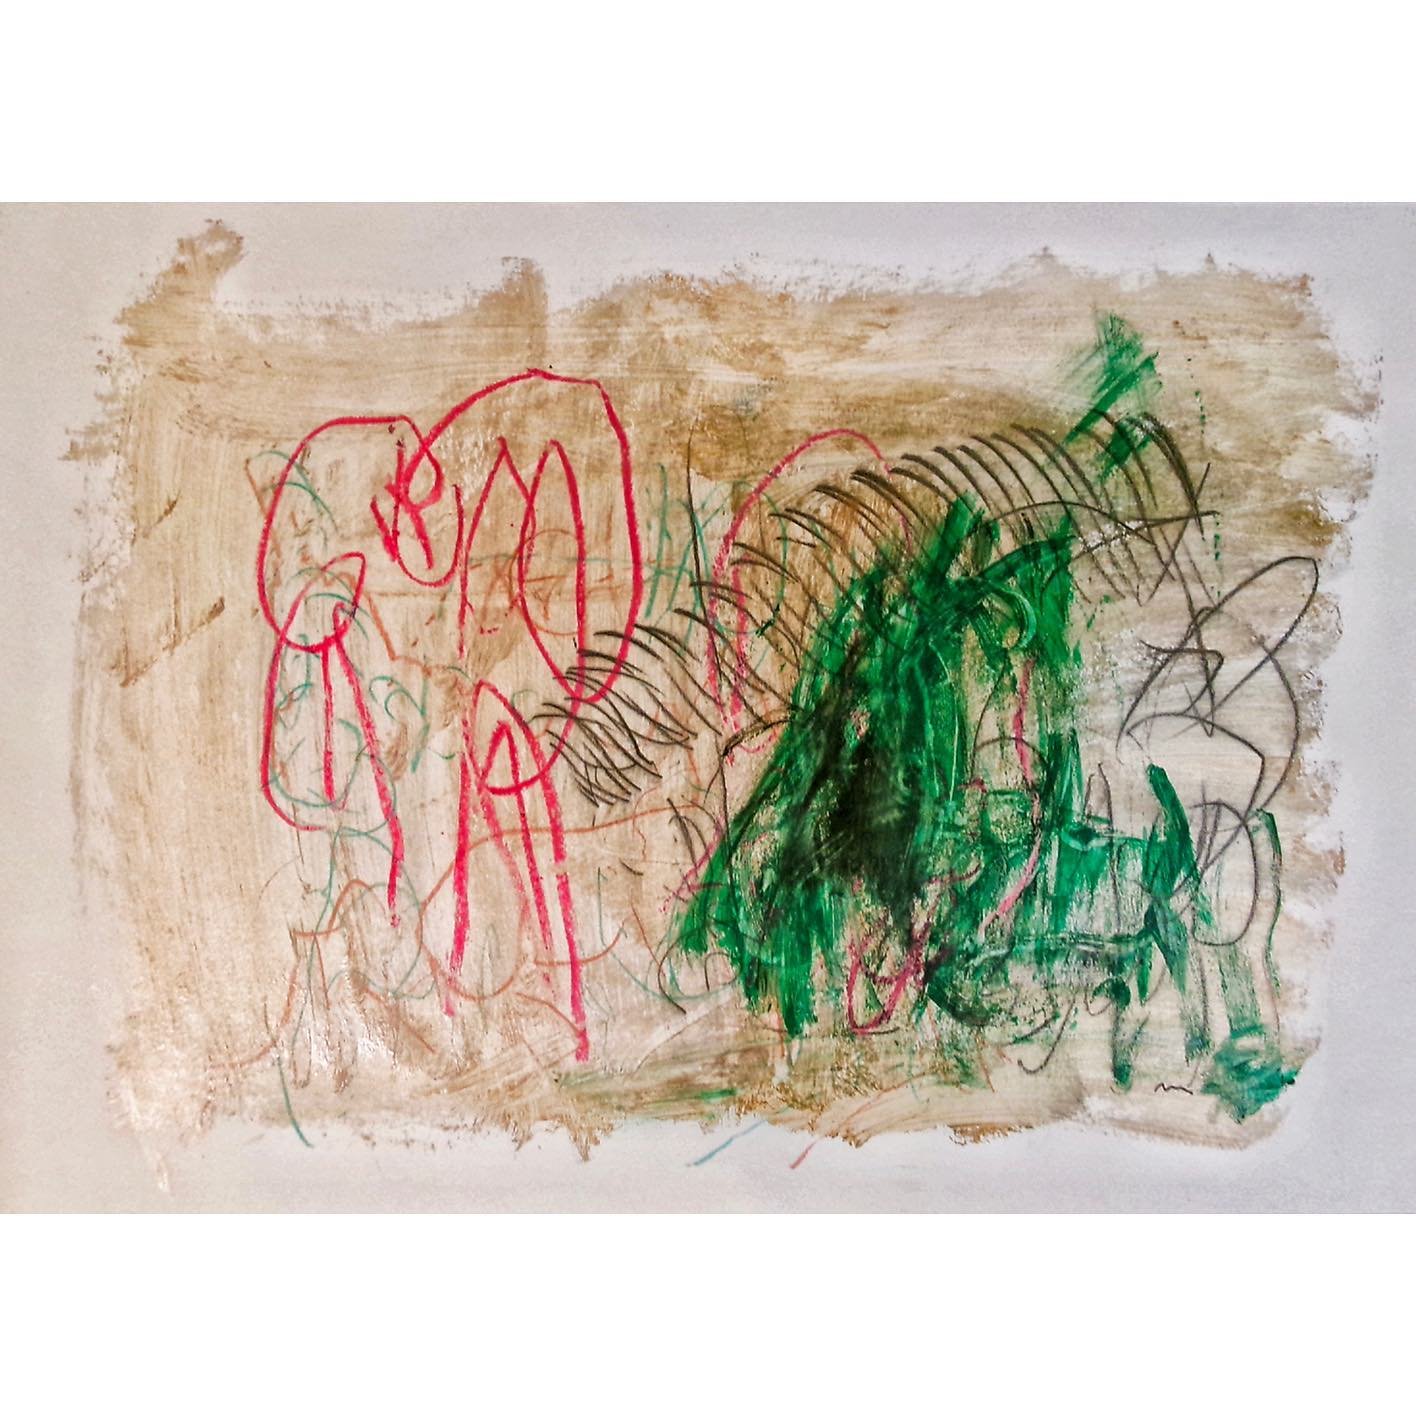 K4 by Joan Pa&ntilde;ell Fern&aacute;ndez de Liencre
@joanpanell_art. DM for feature.
.
.
.
.
.
.
.
.
.
.
.
.
.
#painters #paint #art #arts #paintings
#contemporaryart
#contemporarypainting #painting #abstraction
#scribble #scribbles #scribblesthatma